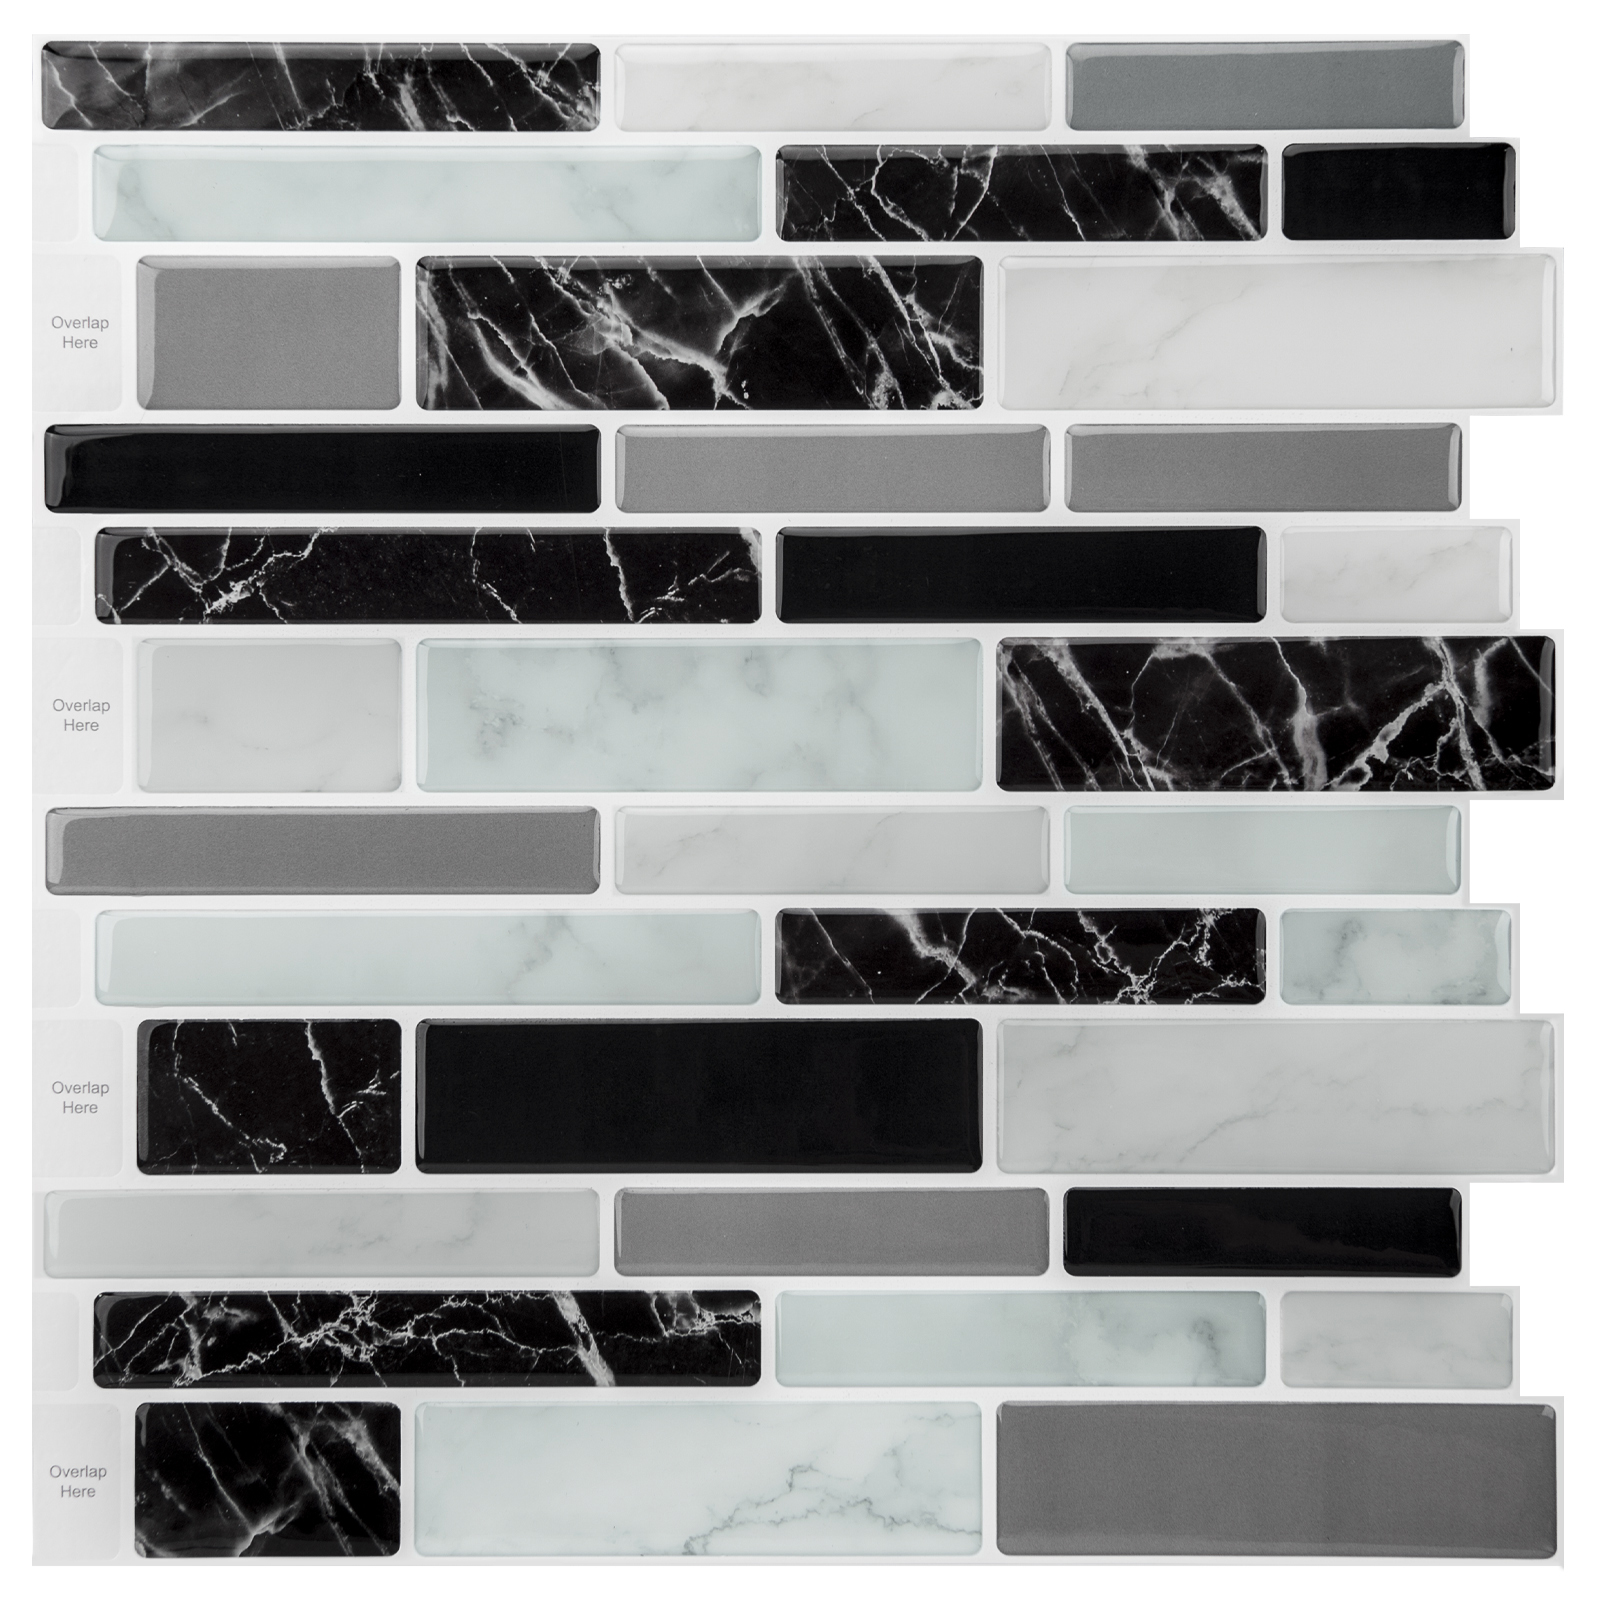 Art3d 10-Sheet Peel and Stick Tile Backsplash for Kitchen in Marble Design